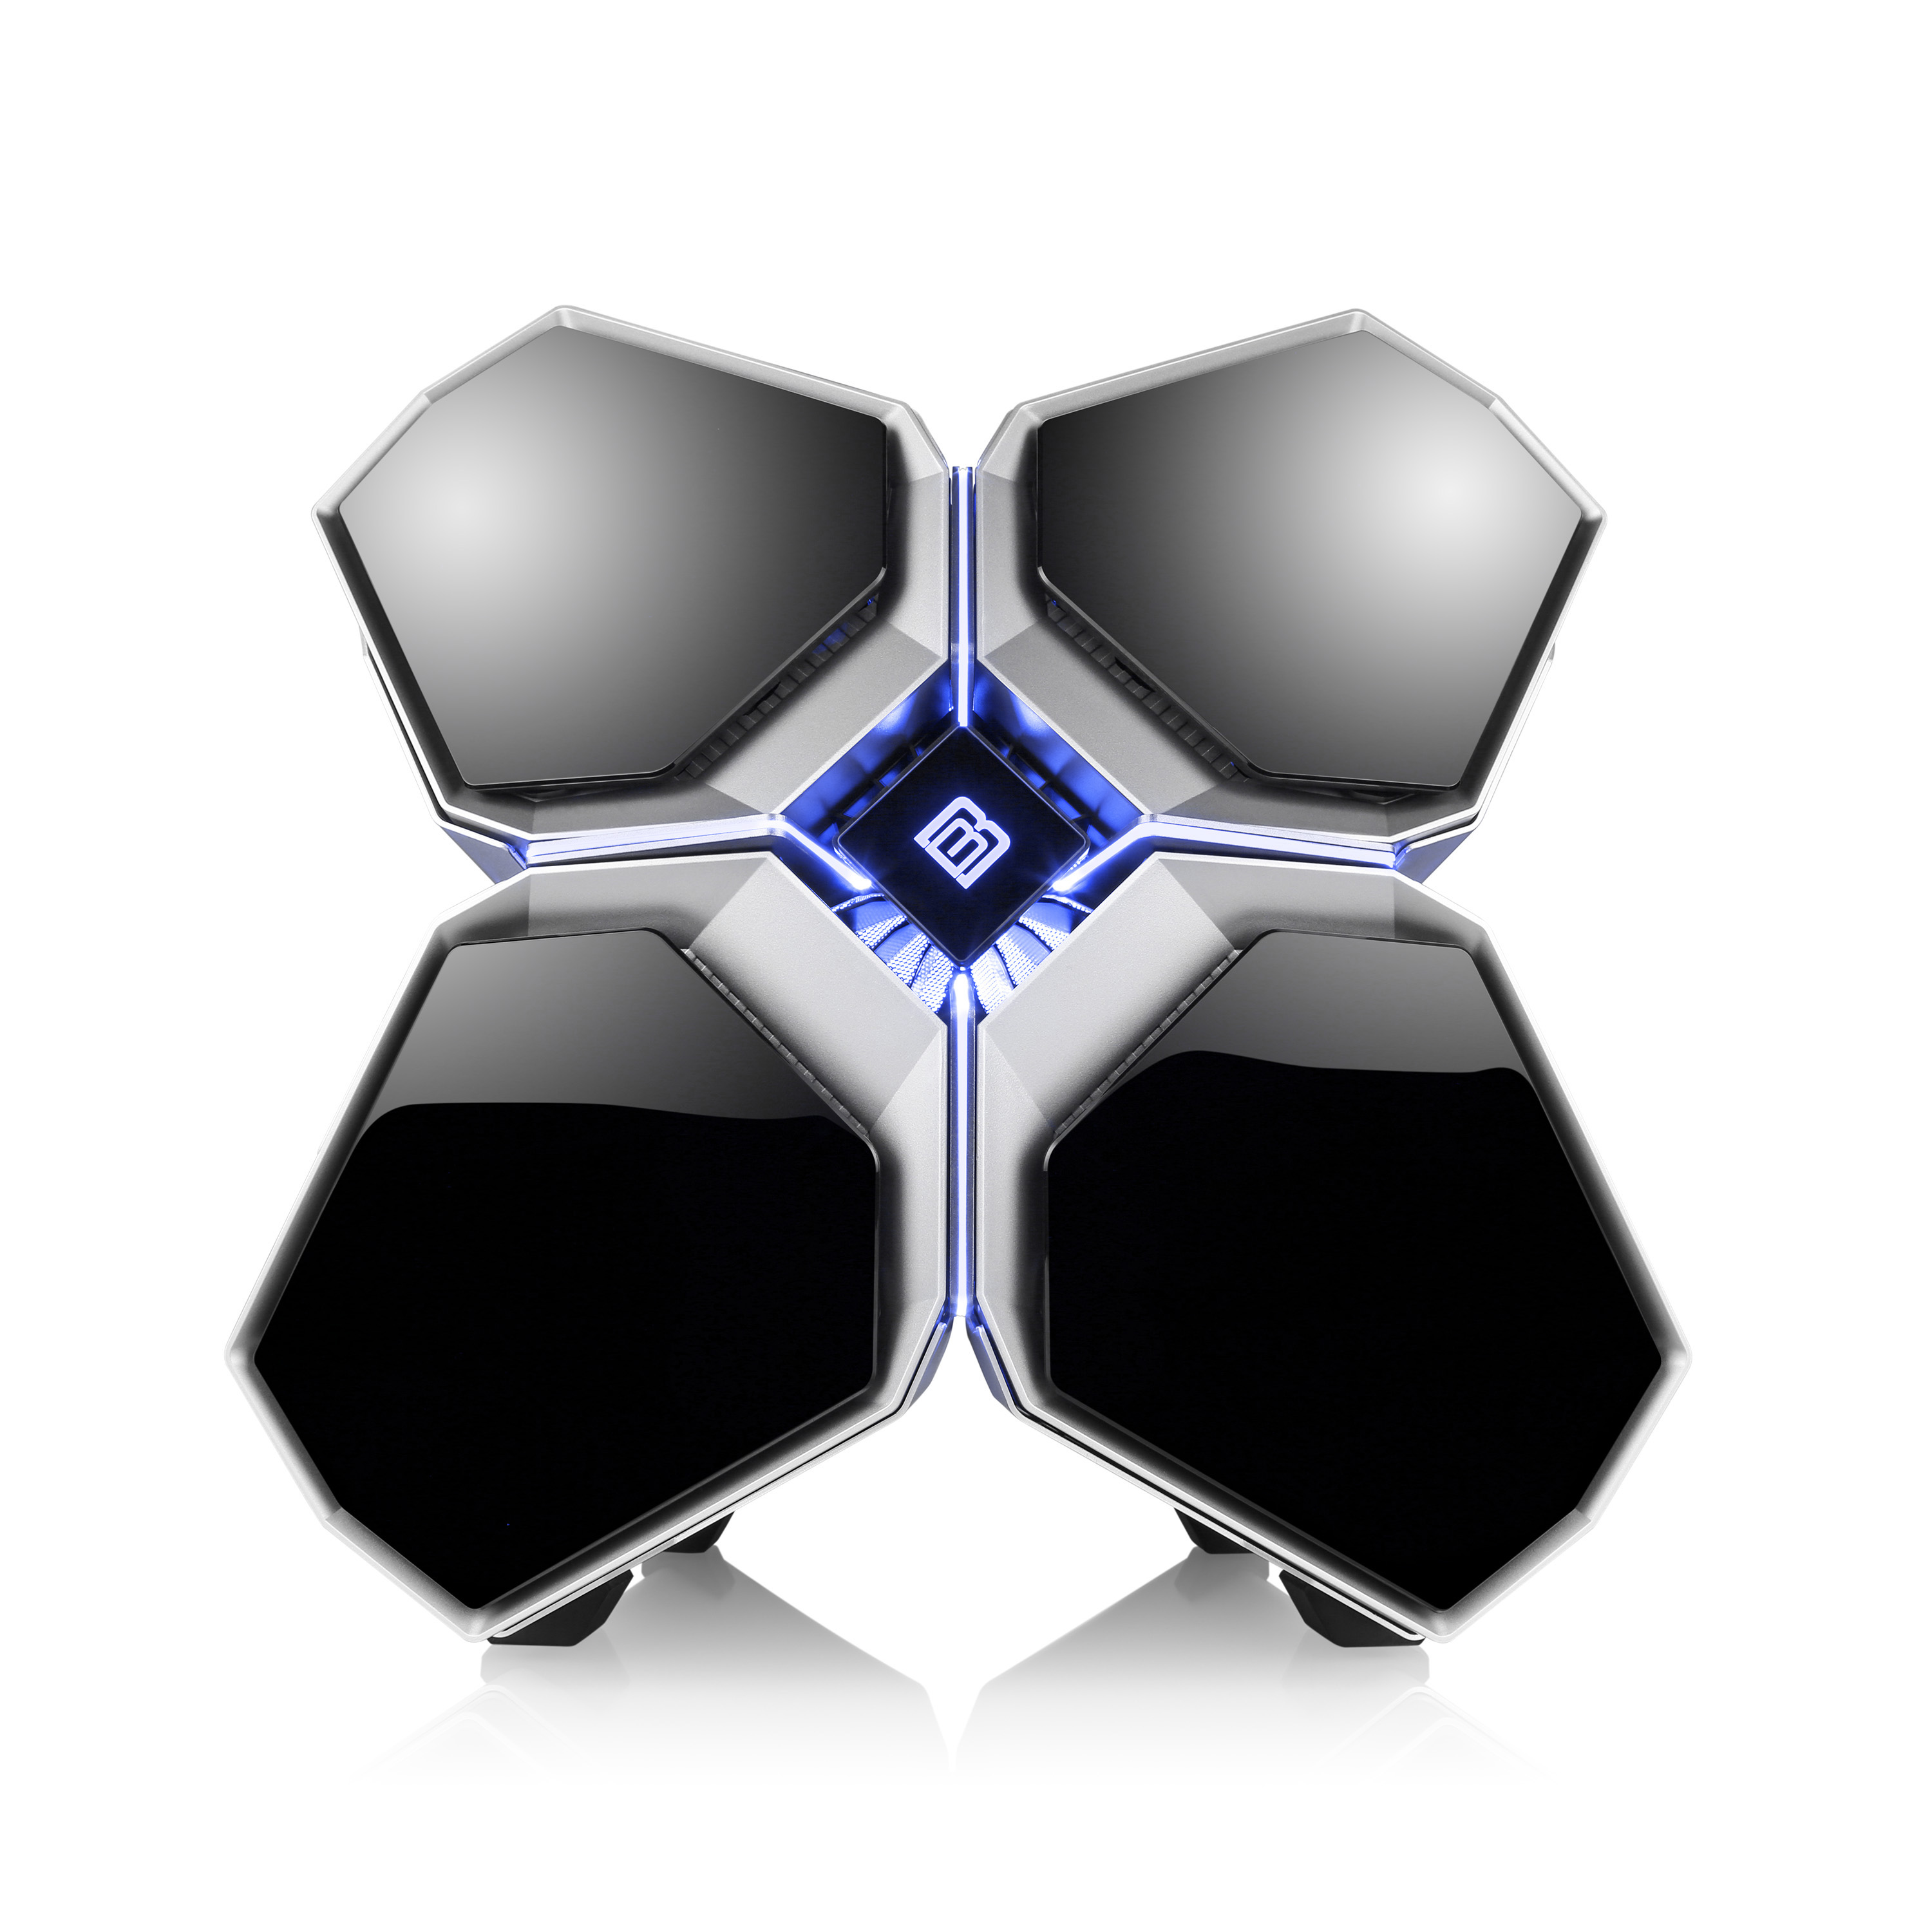 BOOSTBOXX Quadstellar, Beleuchtung RGB Gehäuse, silber PC Steuerung mit